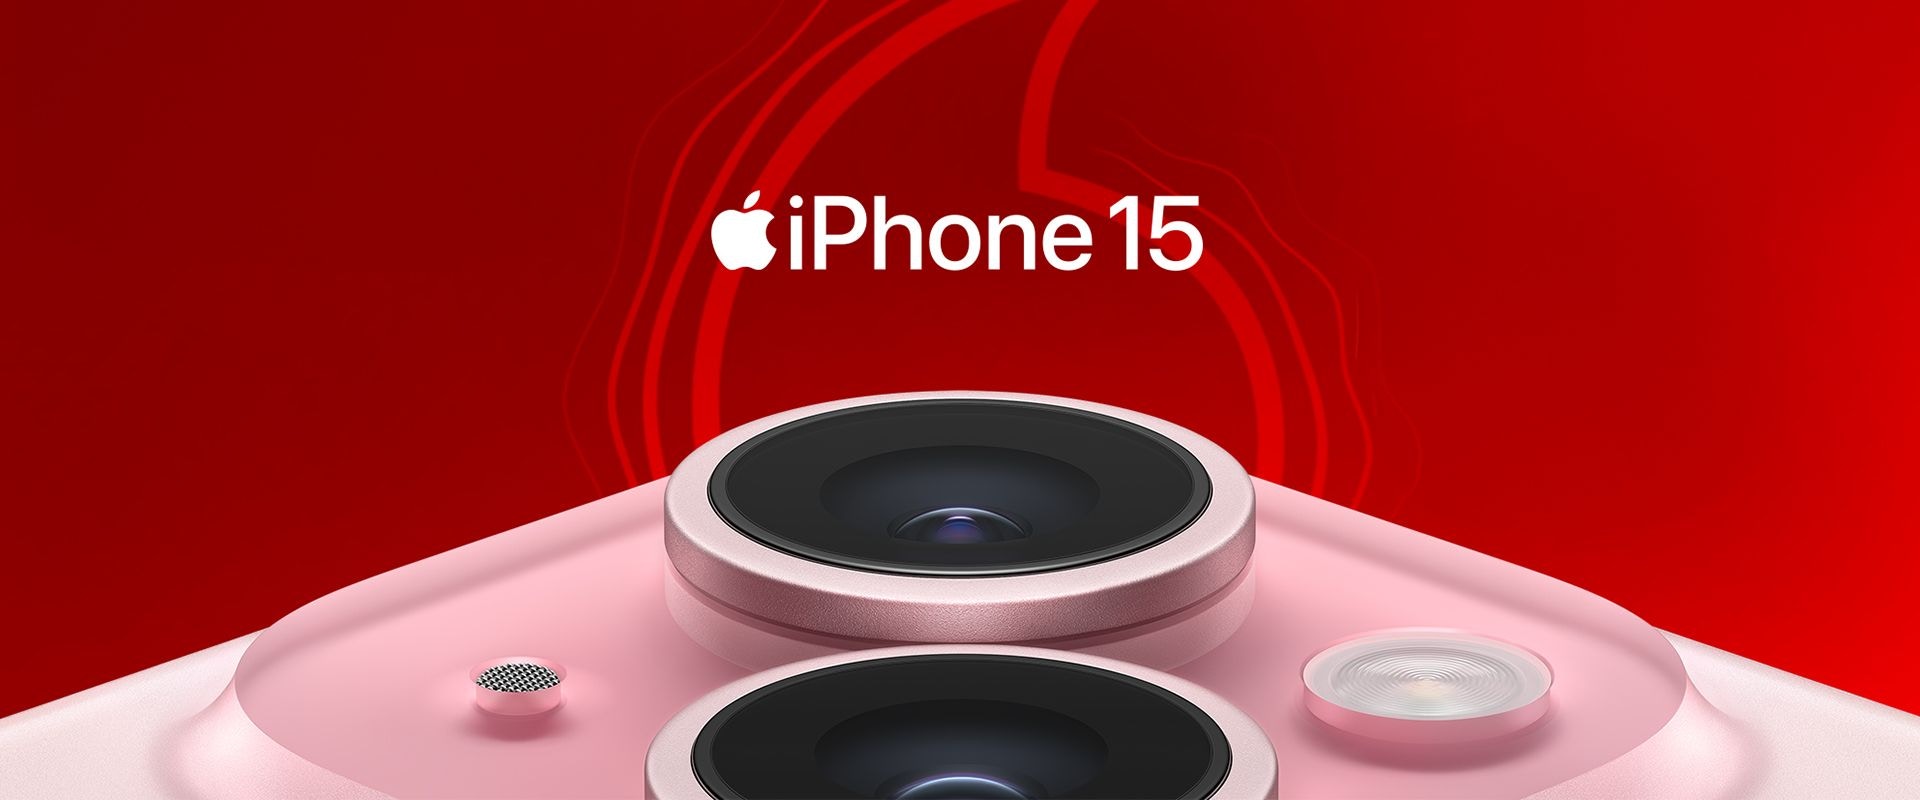 Das iPhone 15